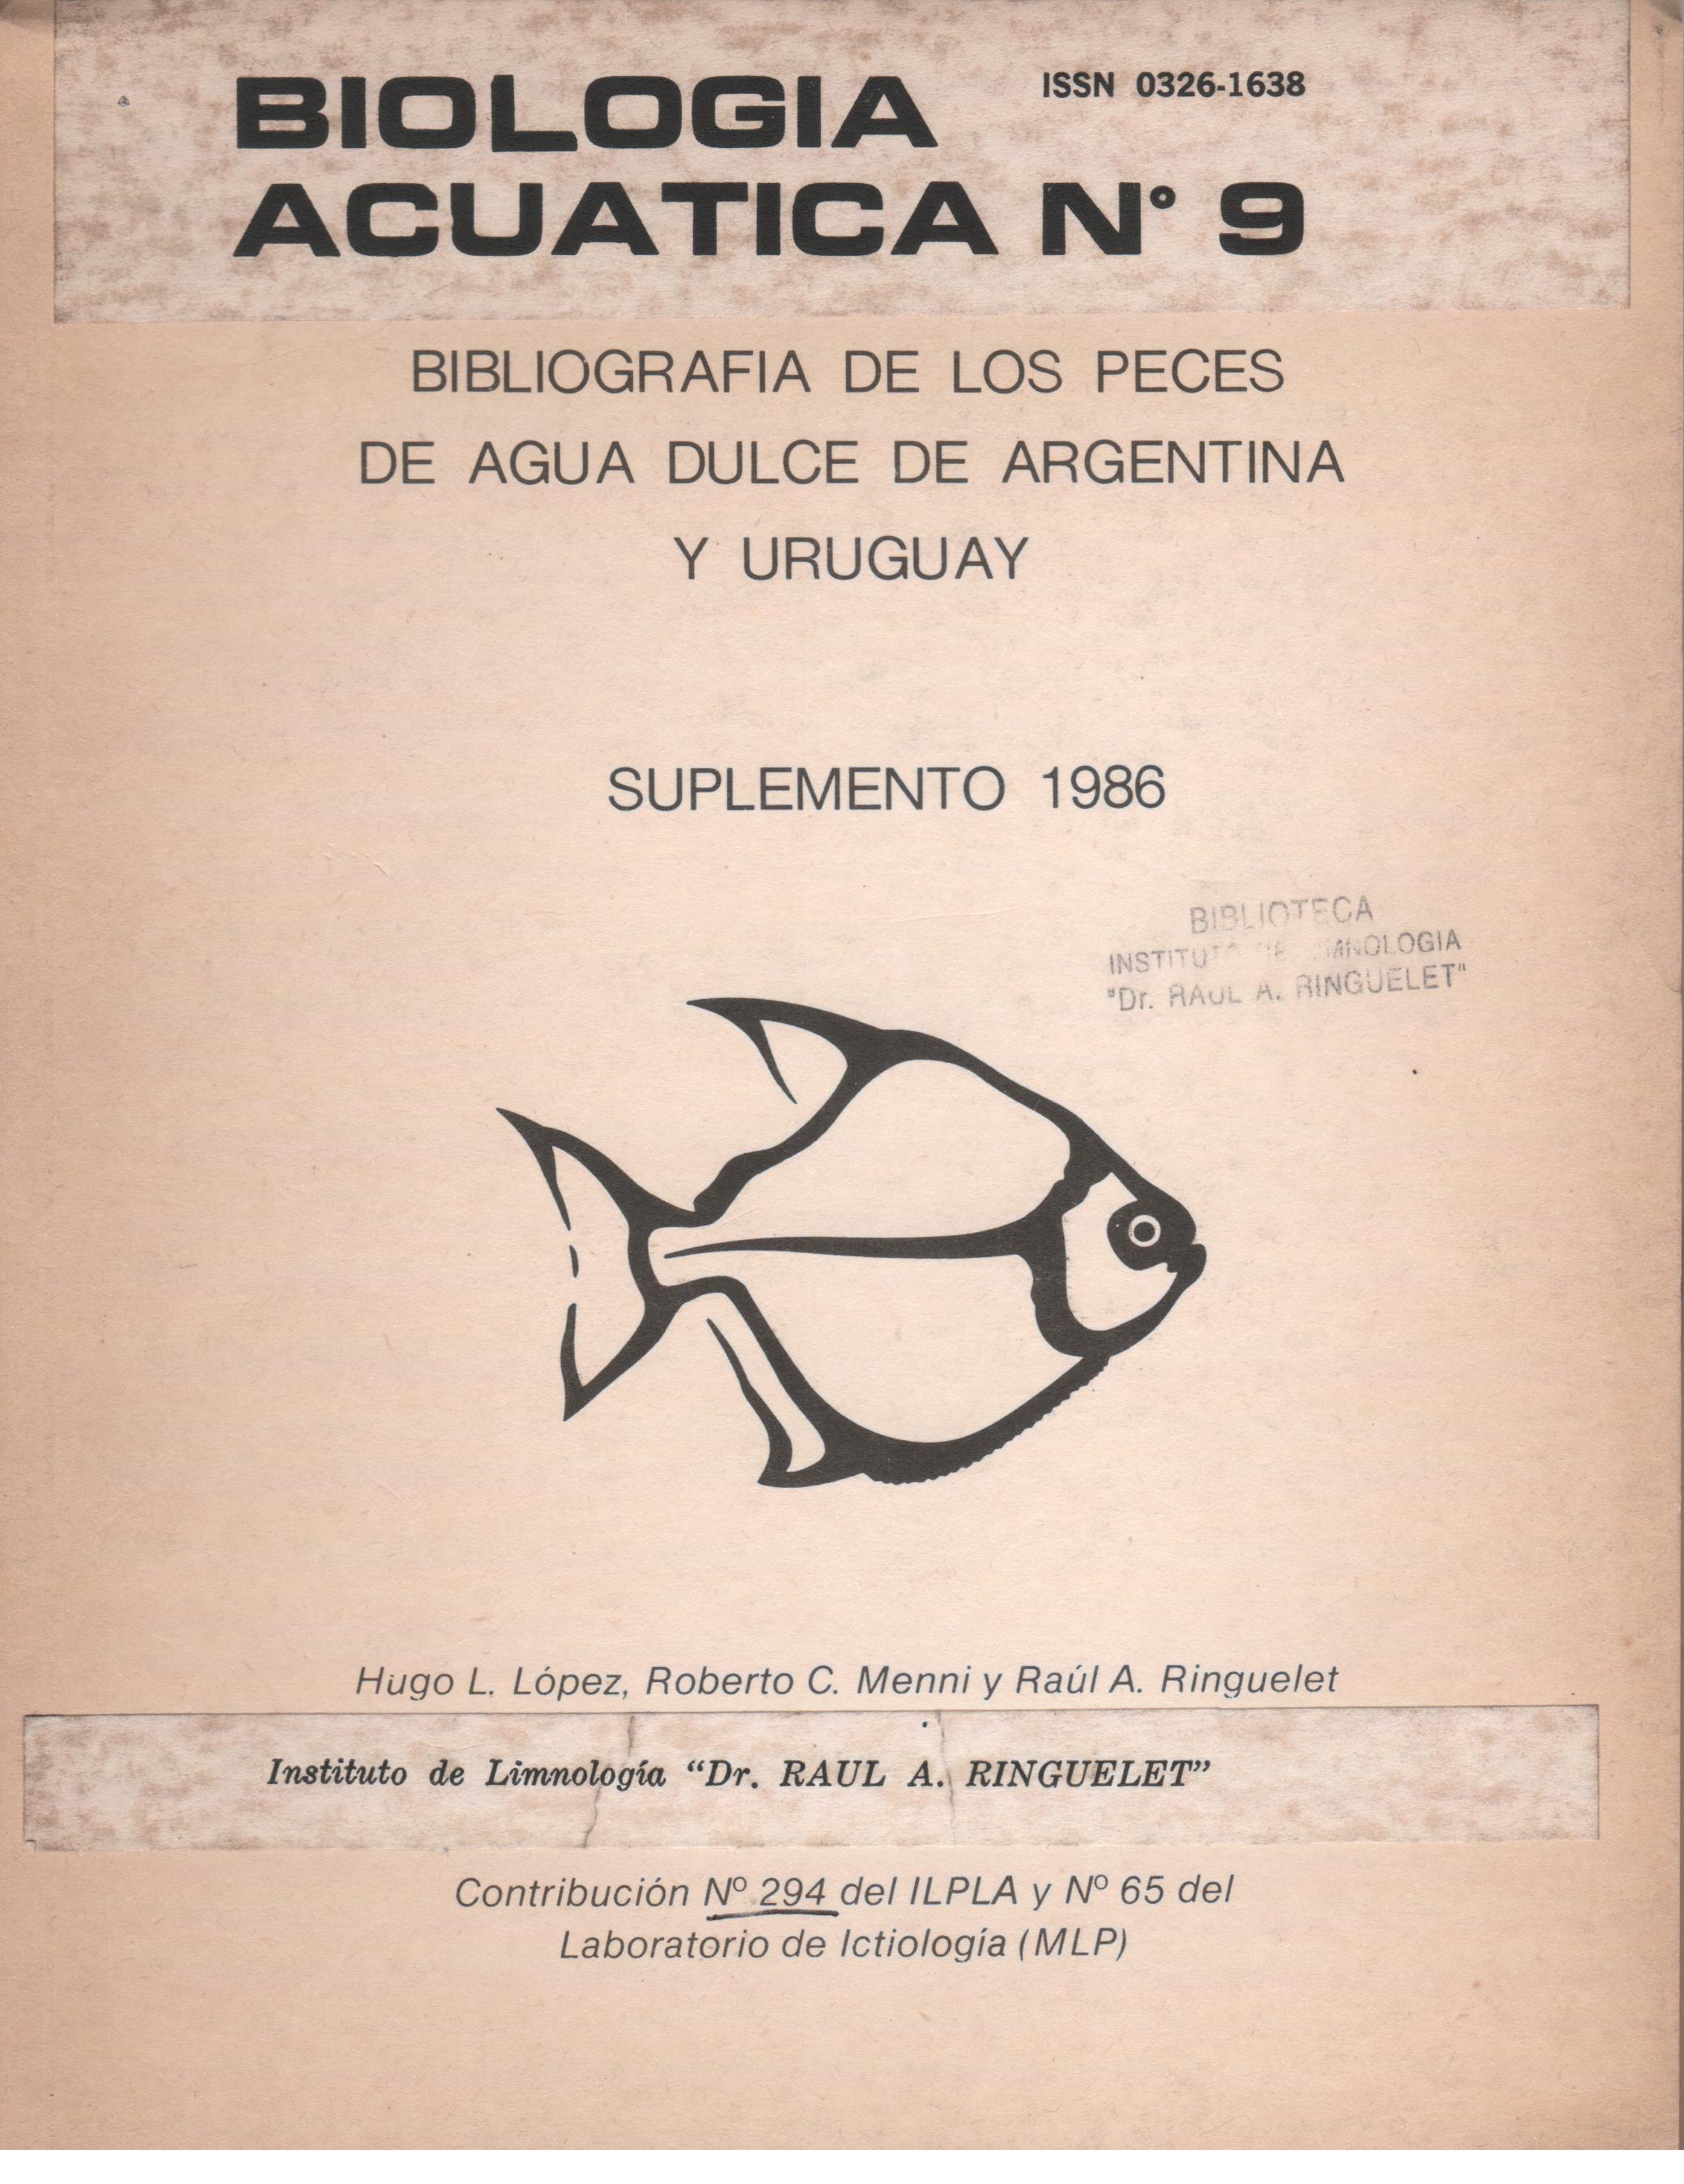 					Ver Núm. 9 (1986): Bibliografía de los peces de agua dulce de Argentina y Uruguay (Suplemento 1986)
				